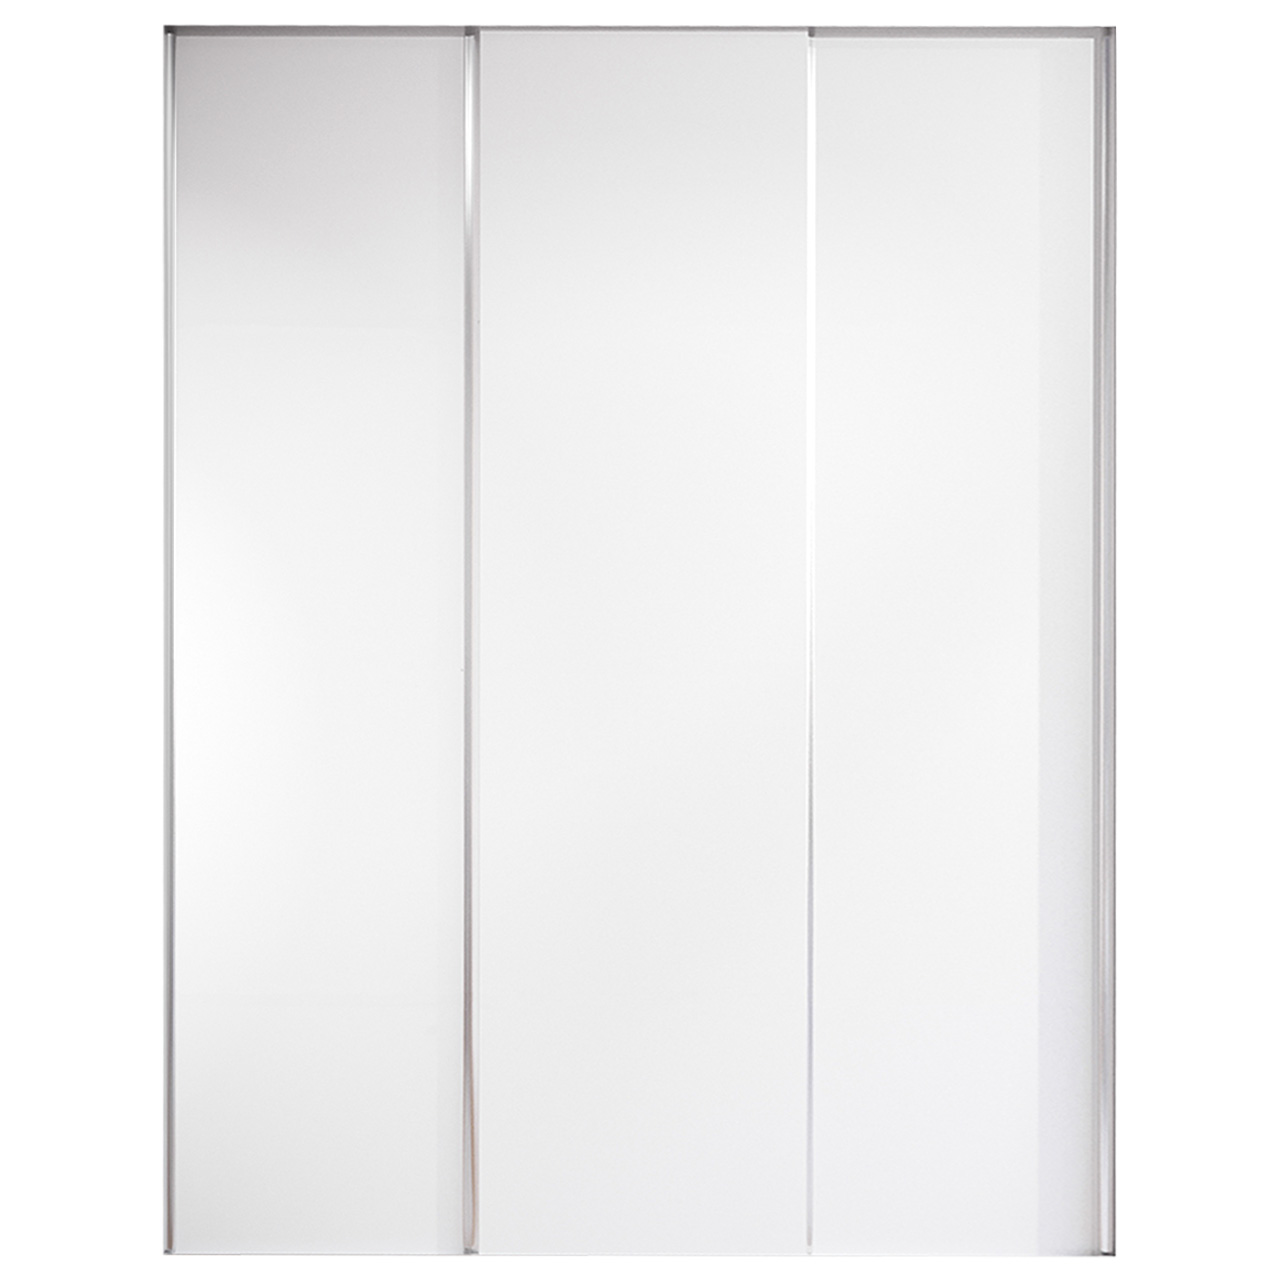 Sliding door for wardrobe MERV F5 150 white